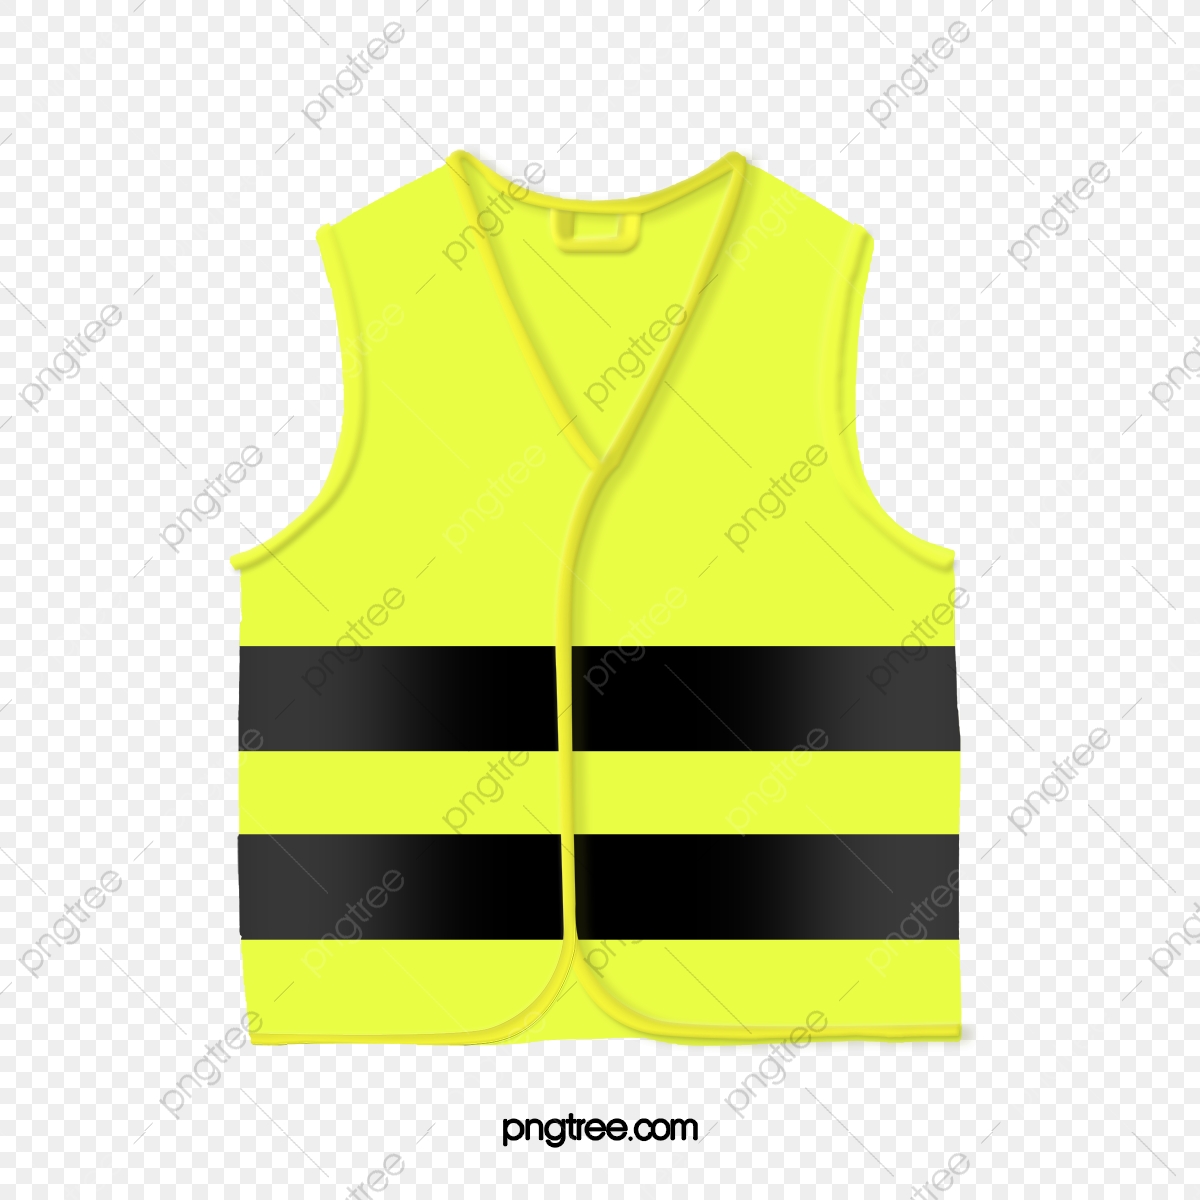 Vest clipart yellow vest, Vest yellow vest Transparent FREE for ...